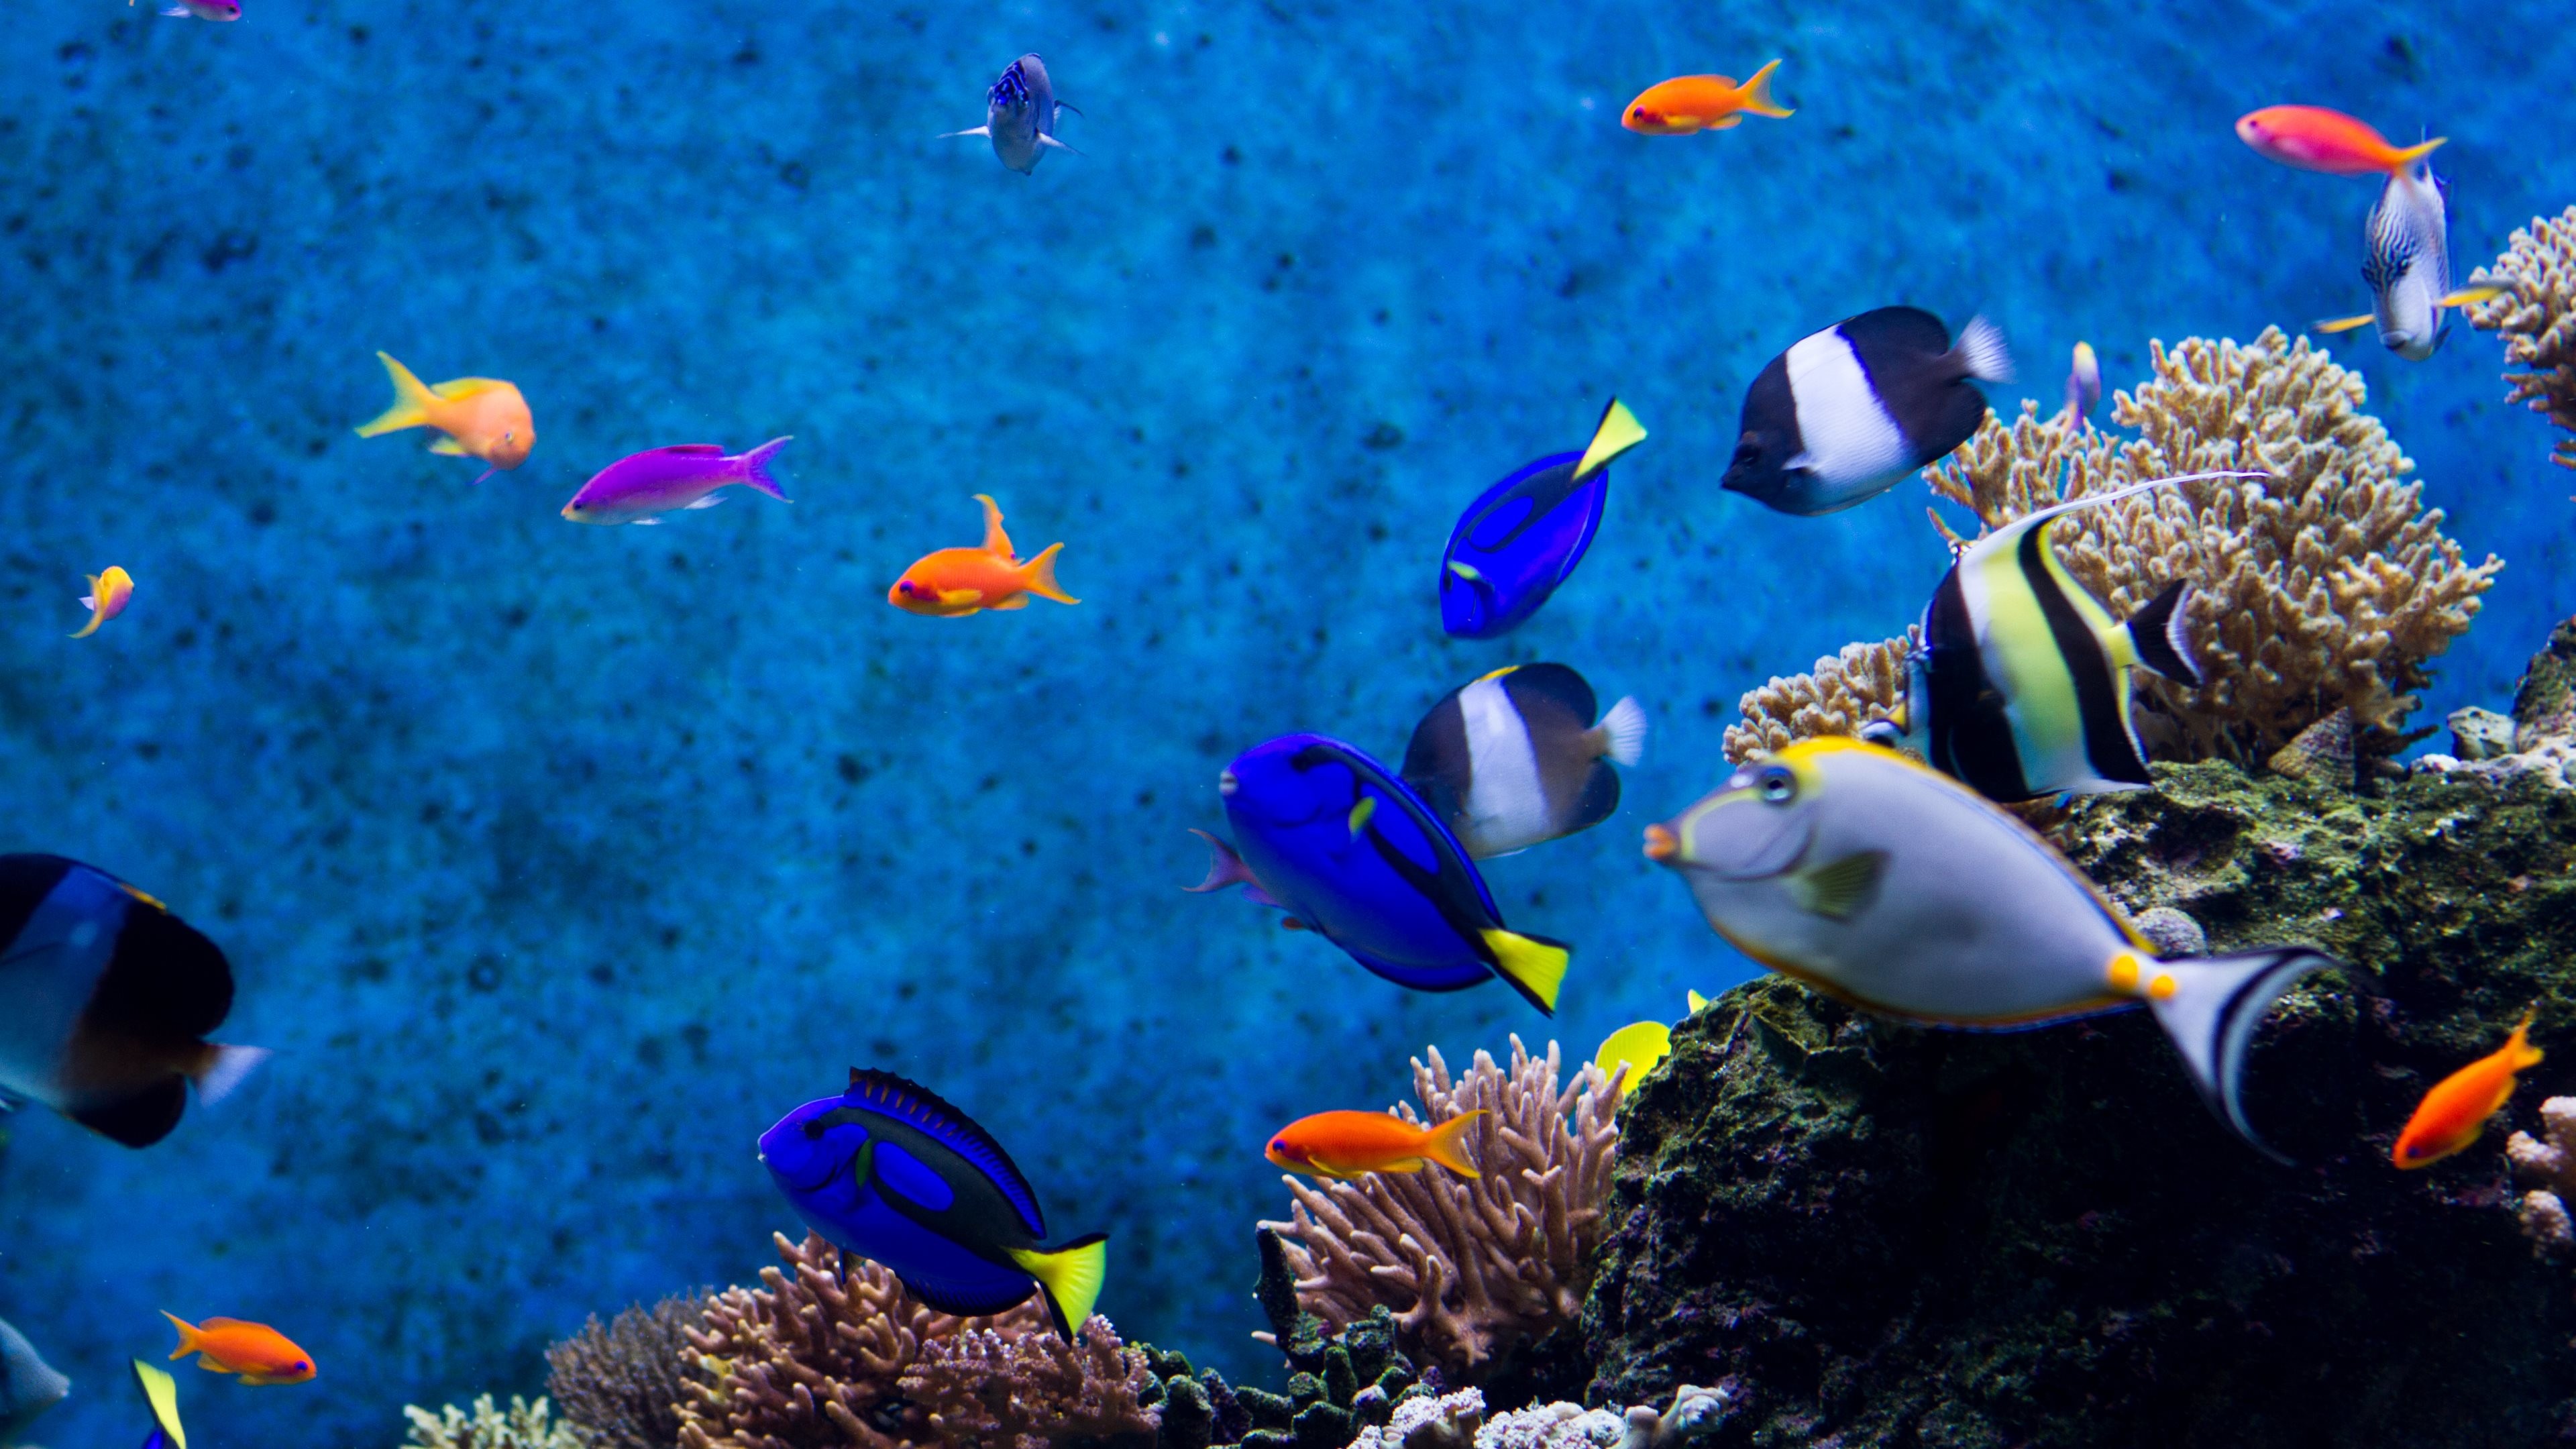 Aquarium Live Wallpaper For Desktop : Aquarium hd 1080p wallpaper  wallpapersafari